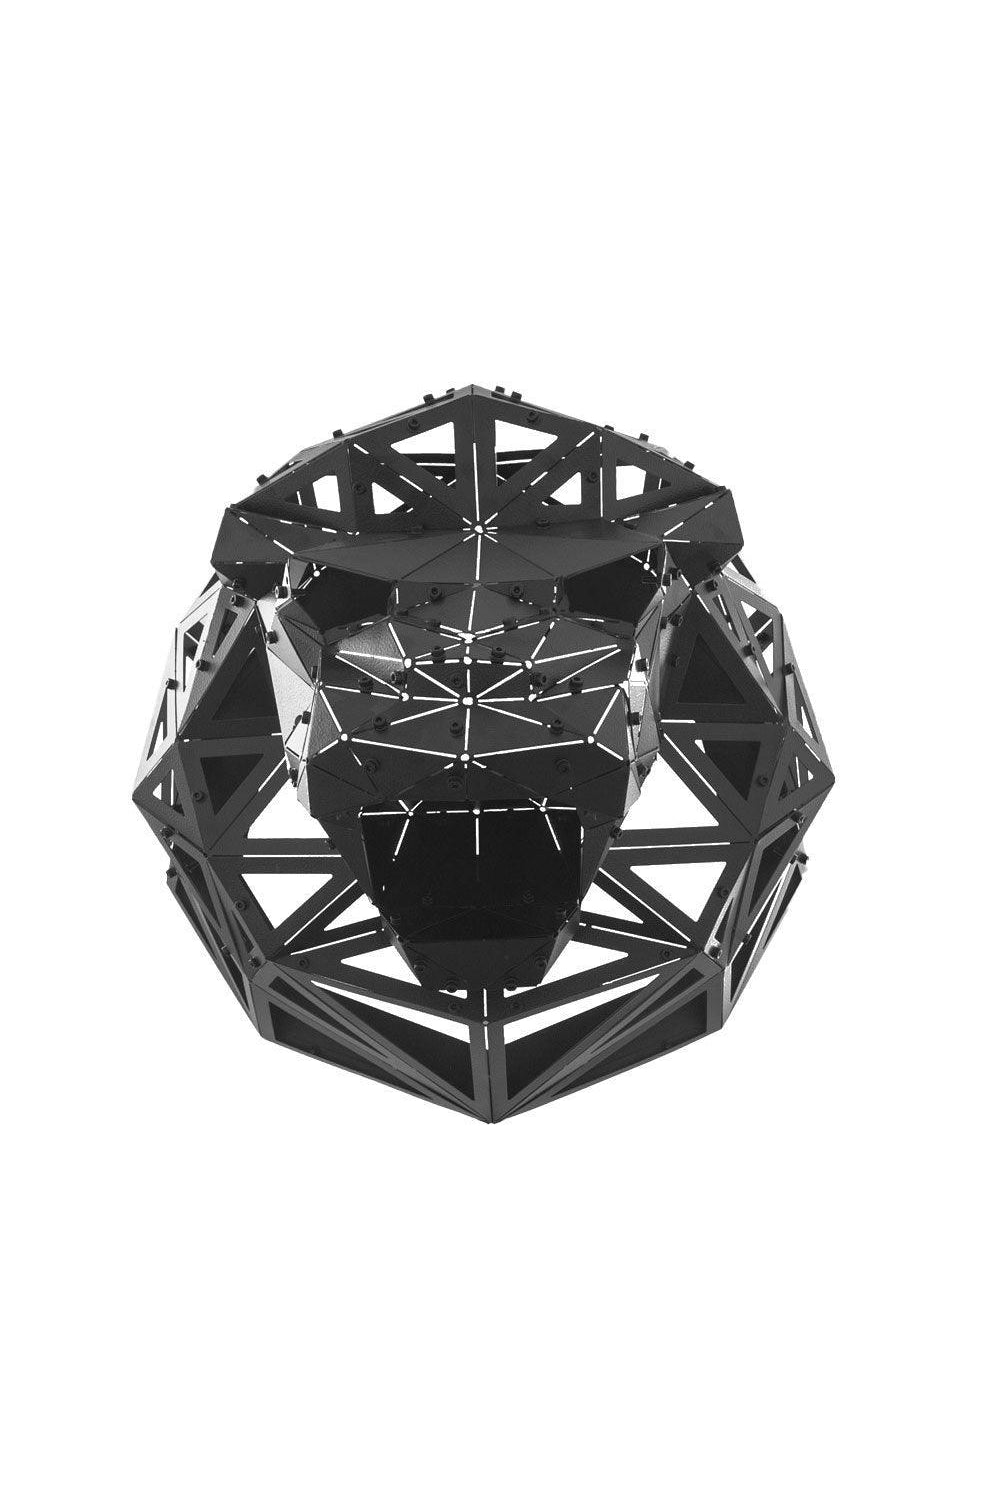 OTTOCKRAFT | Dekoratif Objeler | OTTOCKRAFT™ | LEON V2 - 3D Geometrik Metal Aslan Figürü | Milagron 